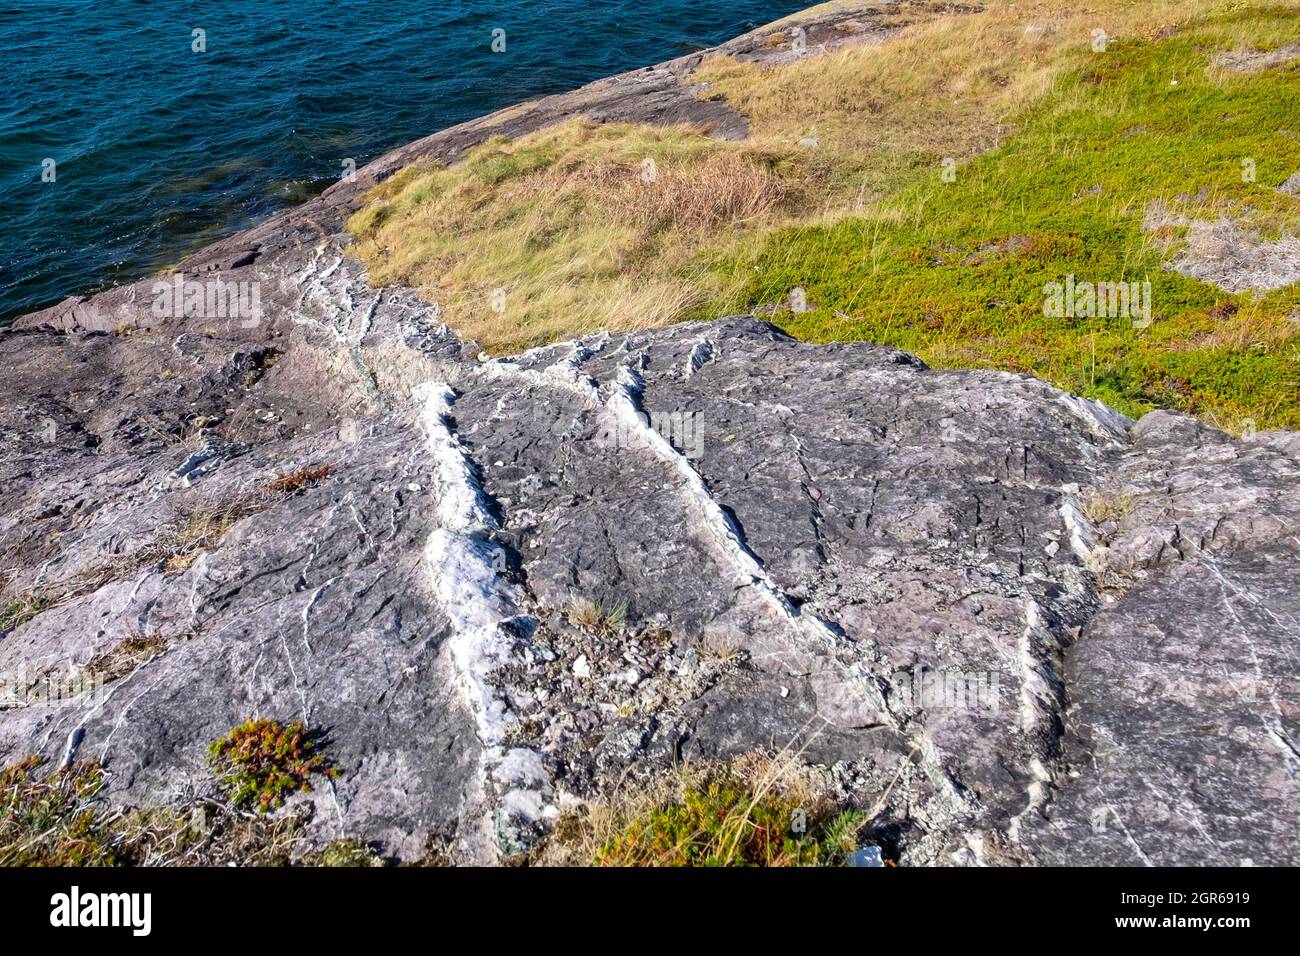 Una vista verso il basso di vene di quarzo bianco e grigio che attraversano una scogliera rocciosa grigia. C'è erba e acqua dell'oceano sullo sfondo. Foto Stock